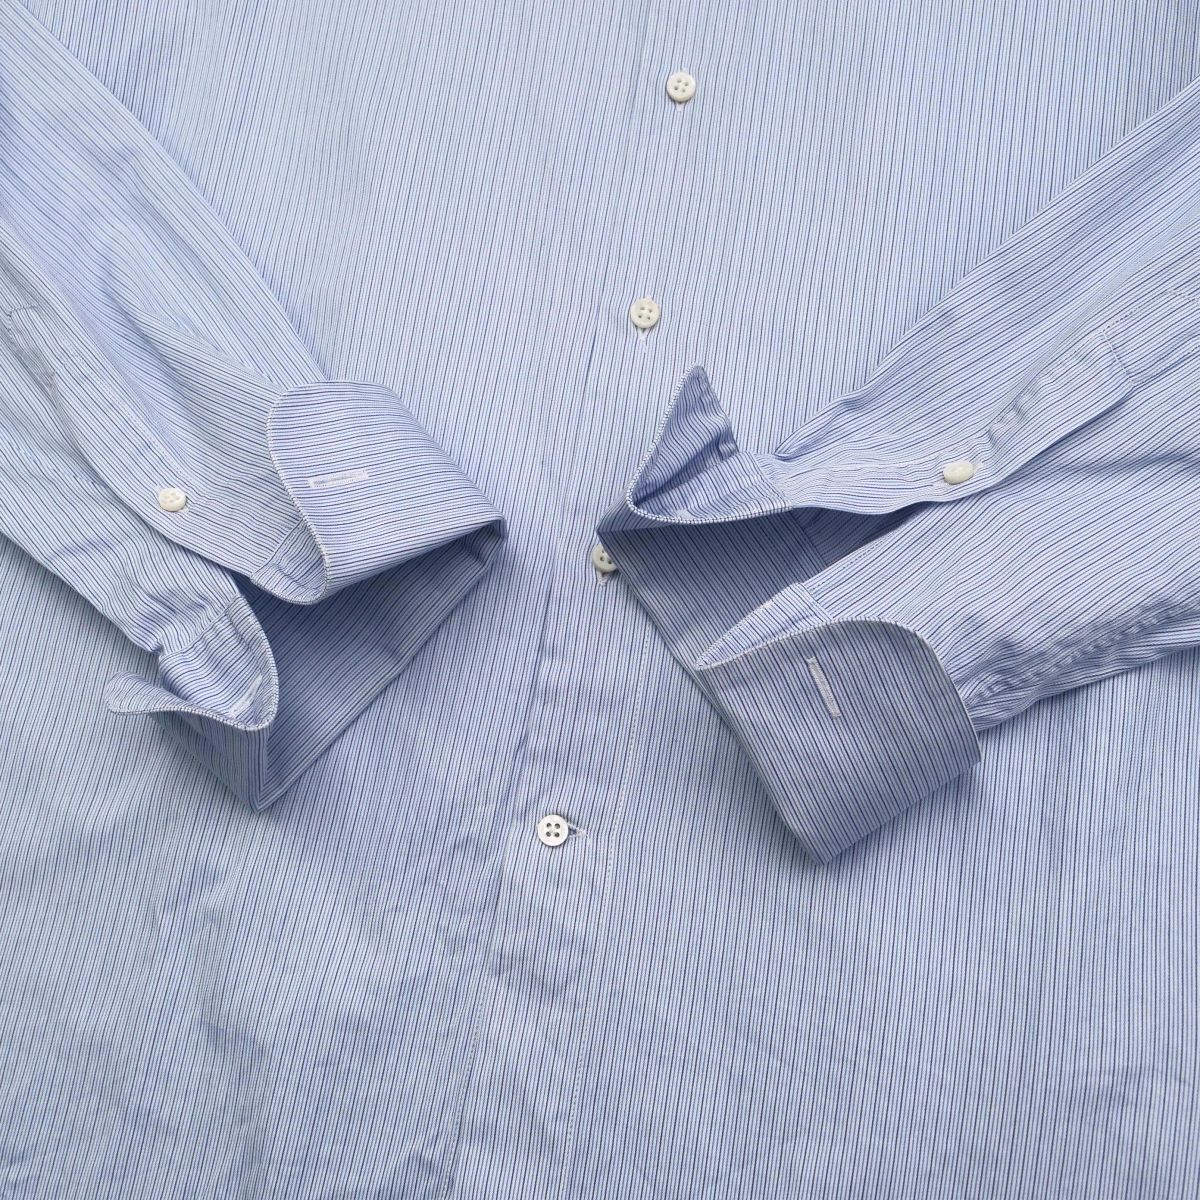 W1541 Armani ko let's .o-ni*2 позиций комплект * постоянный цвет рубашка + двойной запонки рубашка * белый * голубой * хлопок / рубашка с длинным рукавом * мужской 